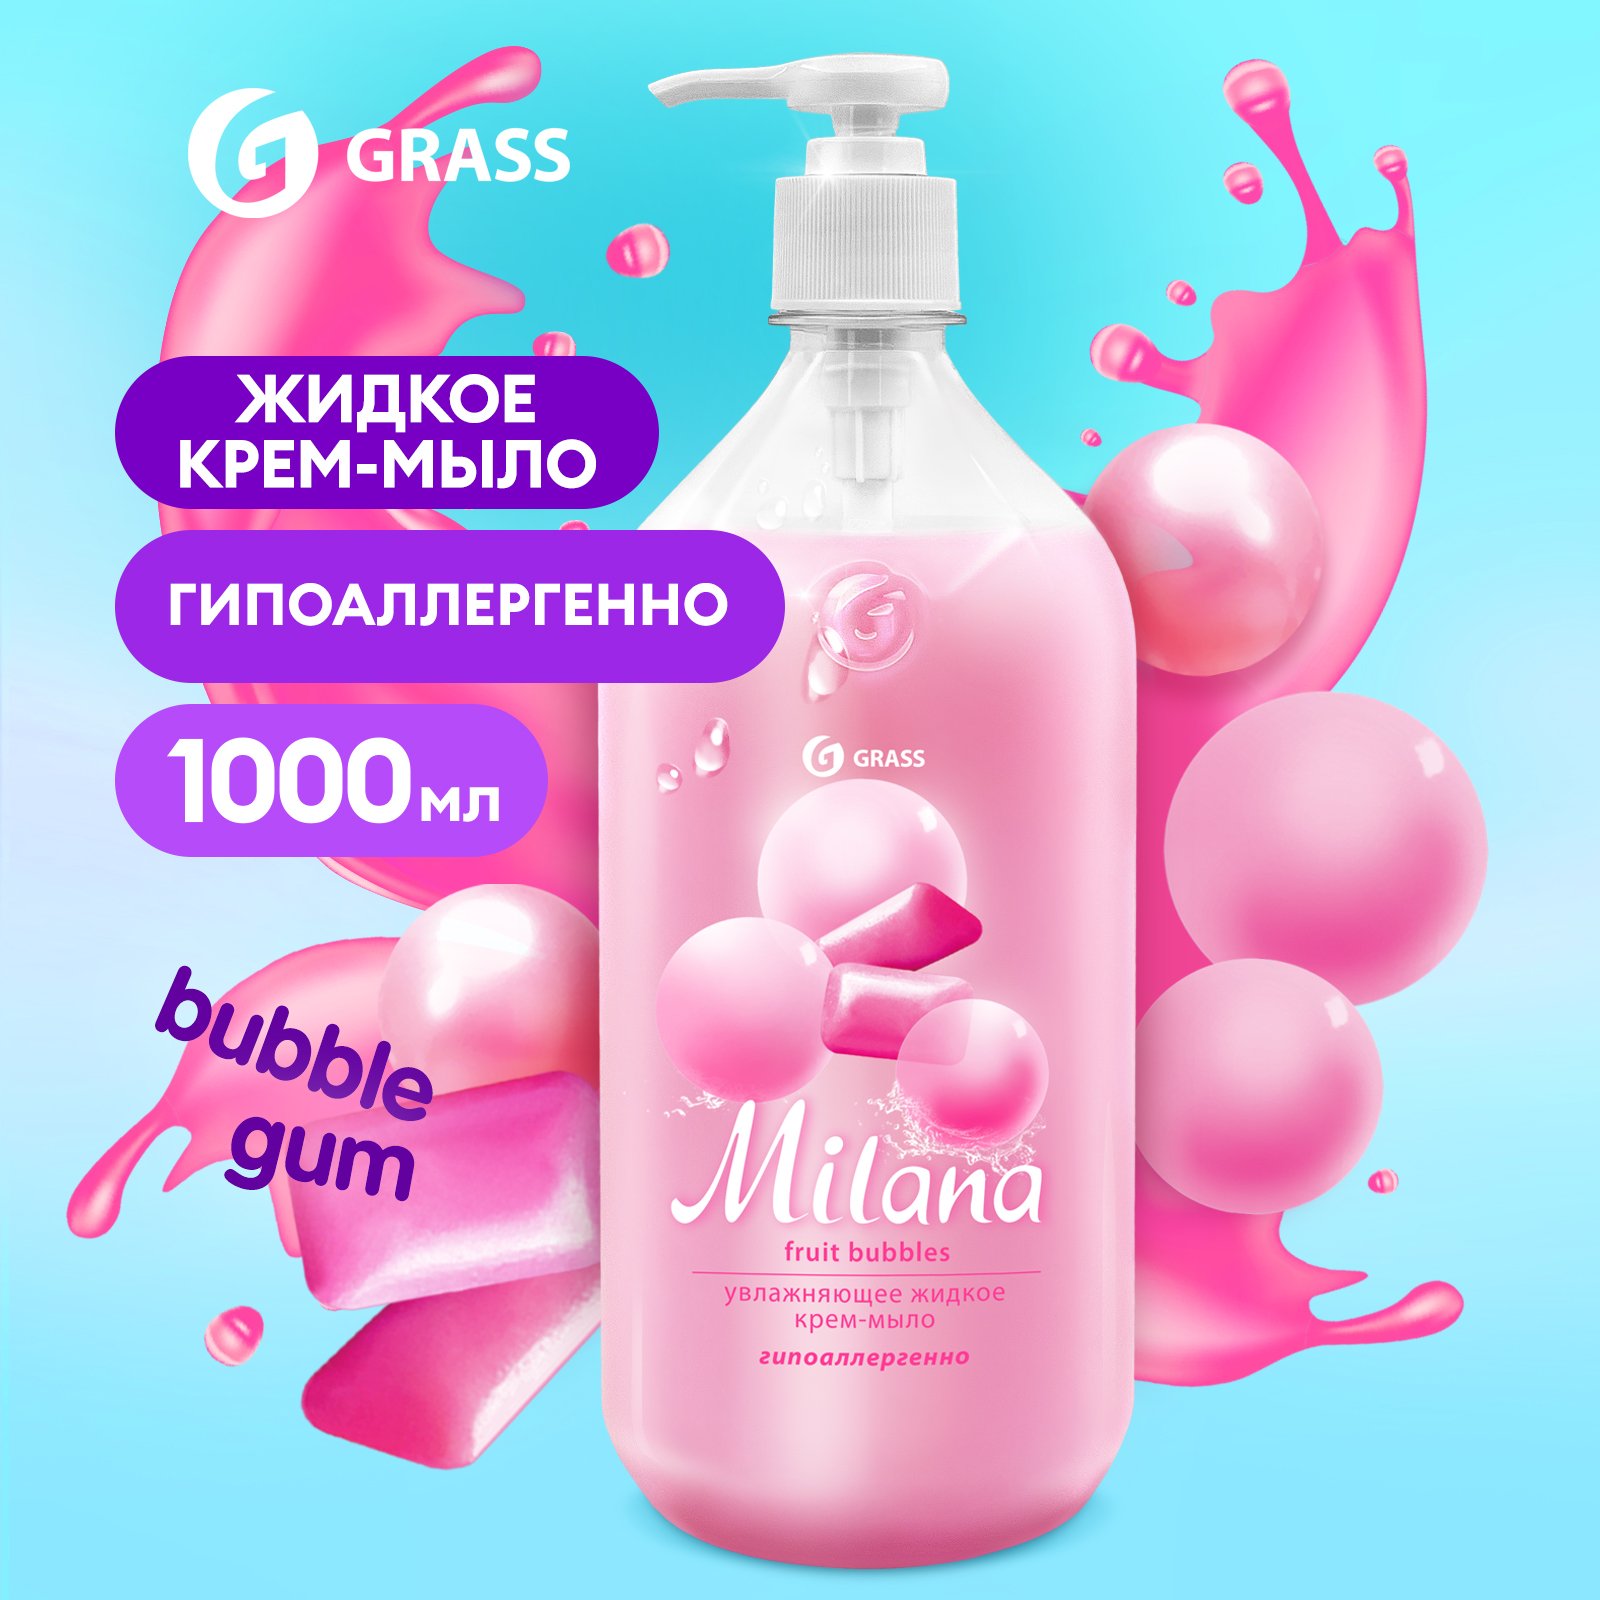 Мыло жидкое для рук Grass Milana Fruit Bubbles туалетное, густое, гипоаллергенное 1 л жидкое крем мыло grass milana манго и лайм 125418 1000 мл